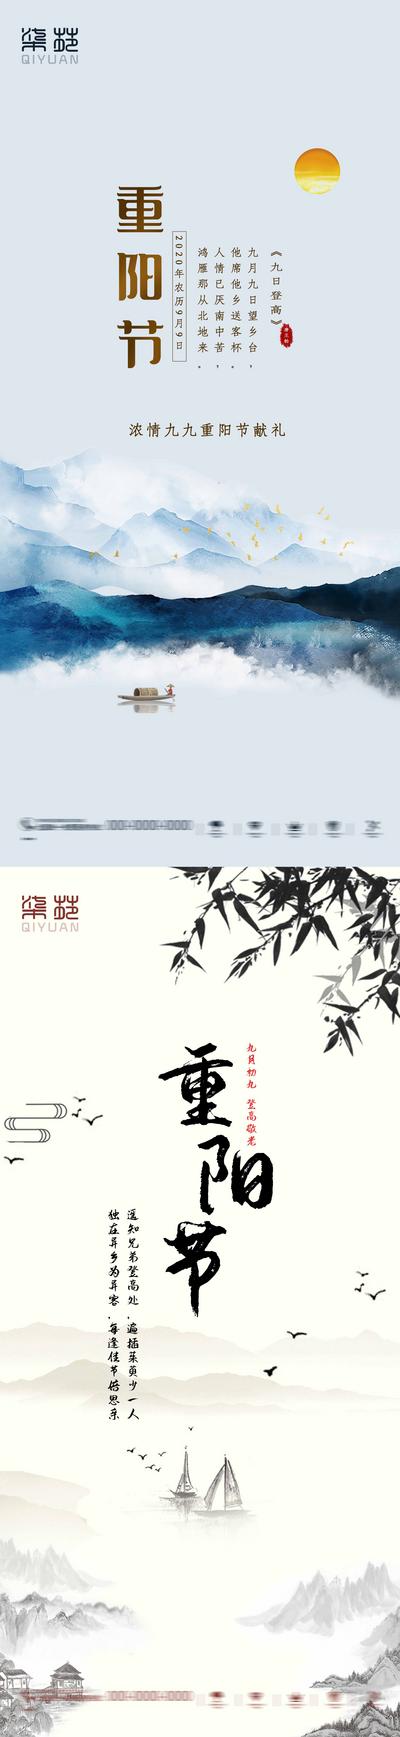 南门网 海报 房地产   中国传统节日 重阳节 中国风  水墨 系列